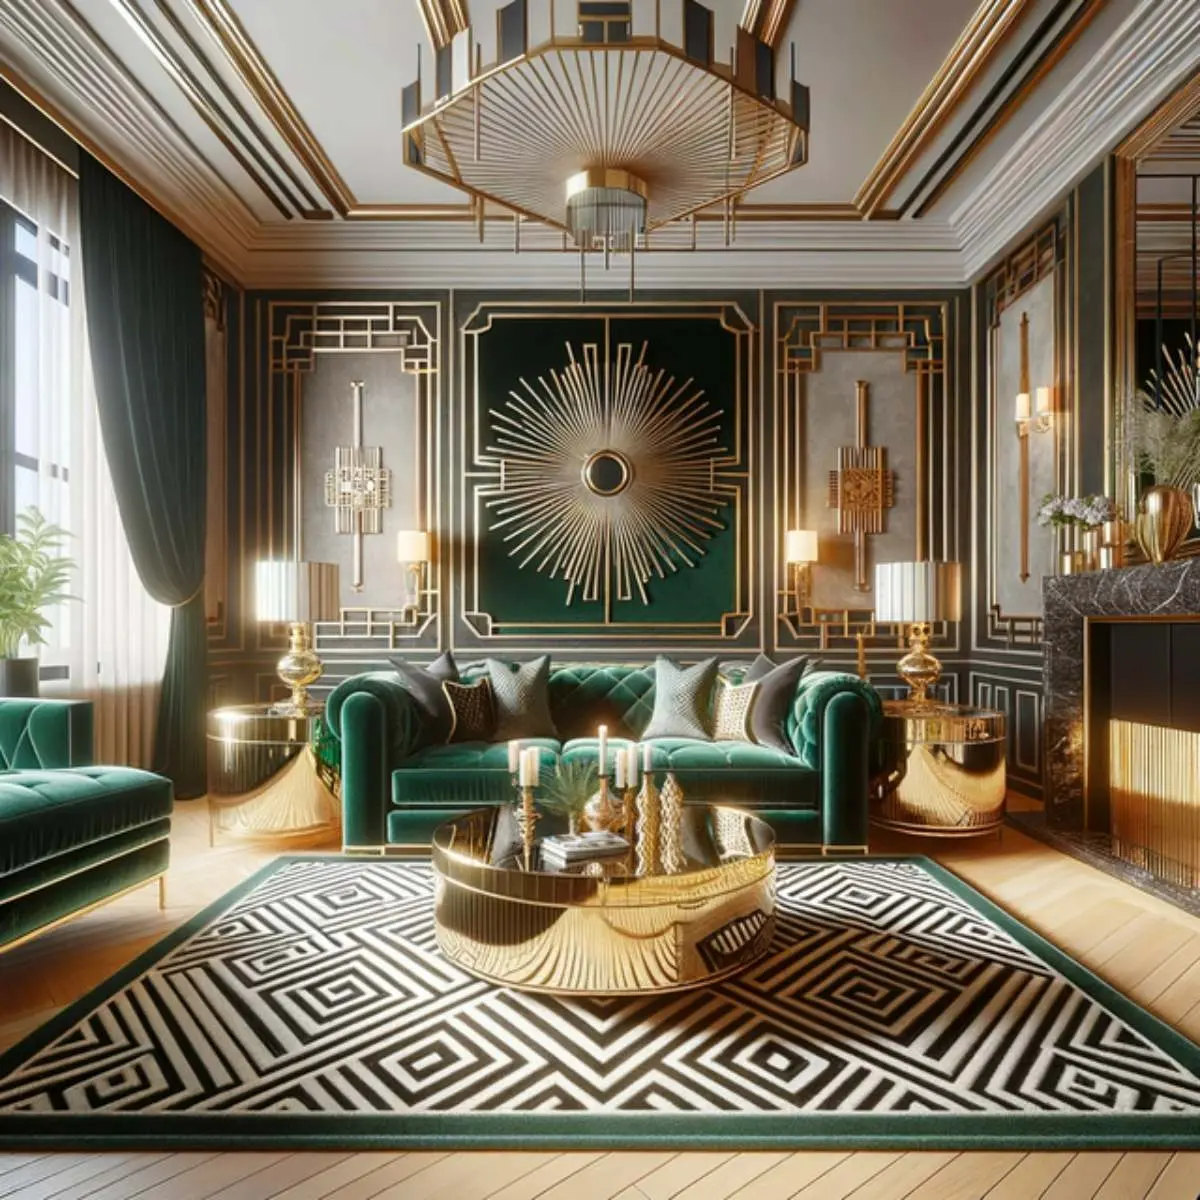 طراحی لوکس خانه با مبلمان طلایی سبز و فرش سفید مشکی سبز سه بعدی با هوش مصنوعی